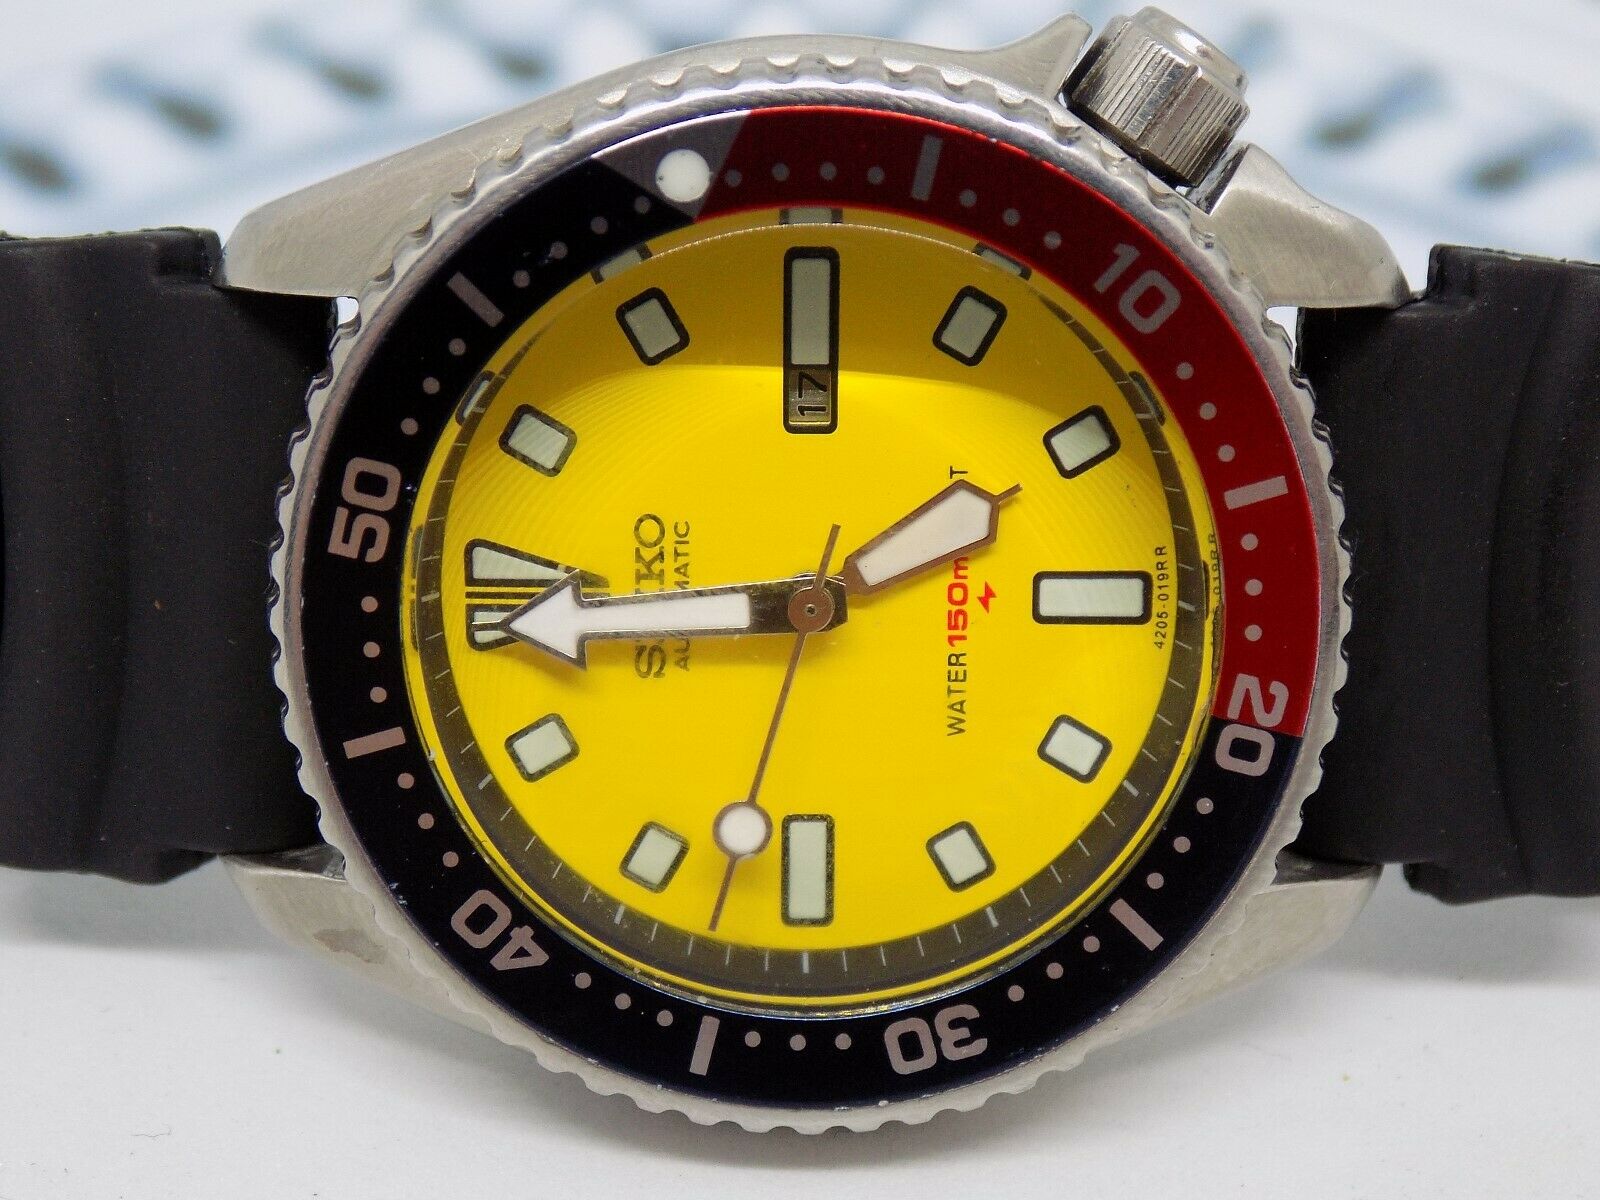 Seiko Diver (4205-0155) Market Price | WatchCharts